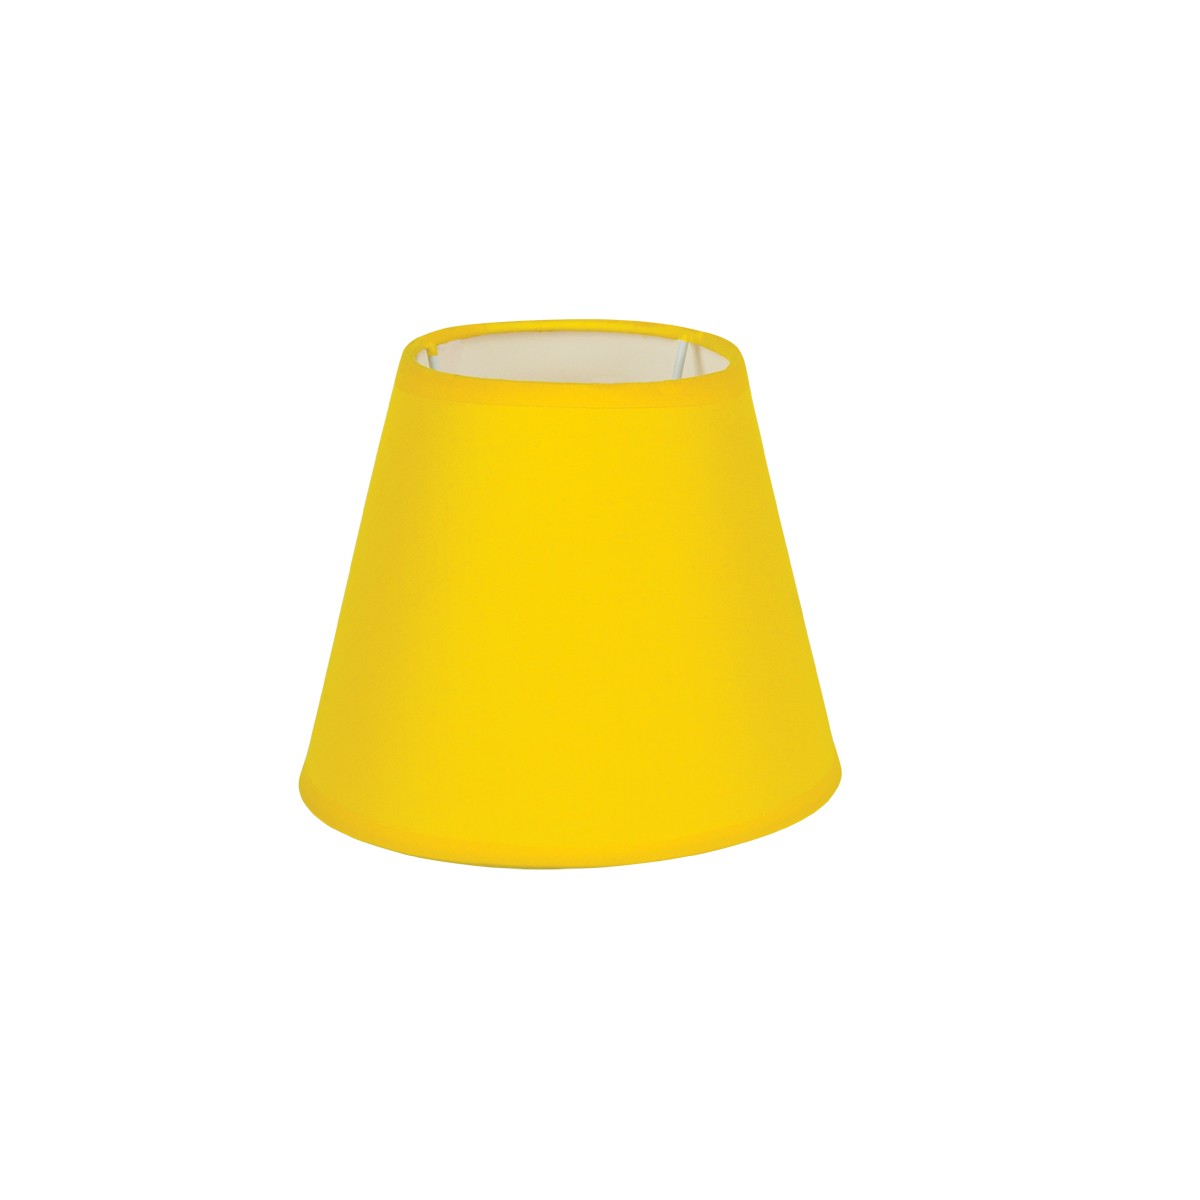 Καπέλο Μονόχρωμο Στρογγυλό Φ22cm Κάτω Πλευρά -Σε Κίτρινο Χρώμα        VK/E27/E14/D22/Y